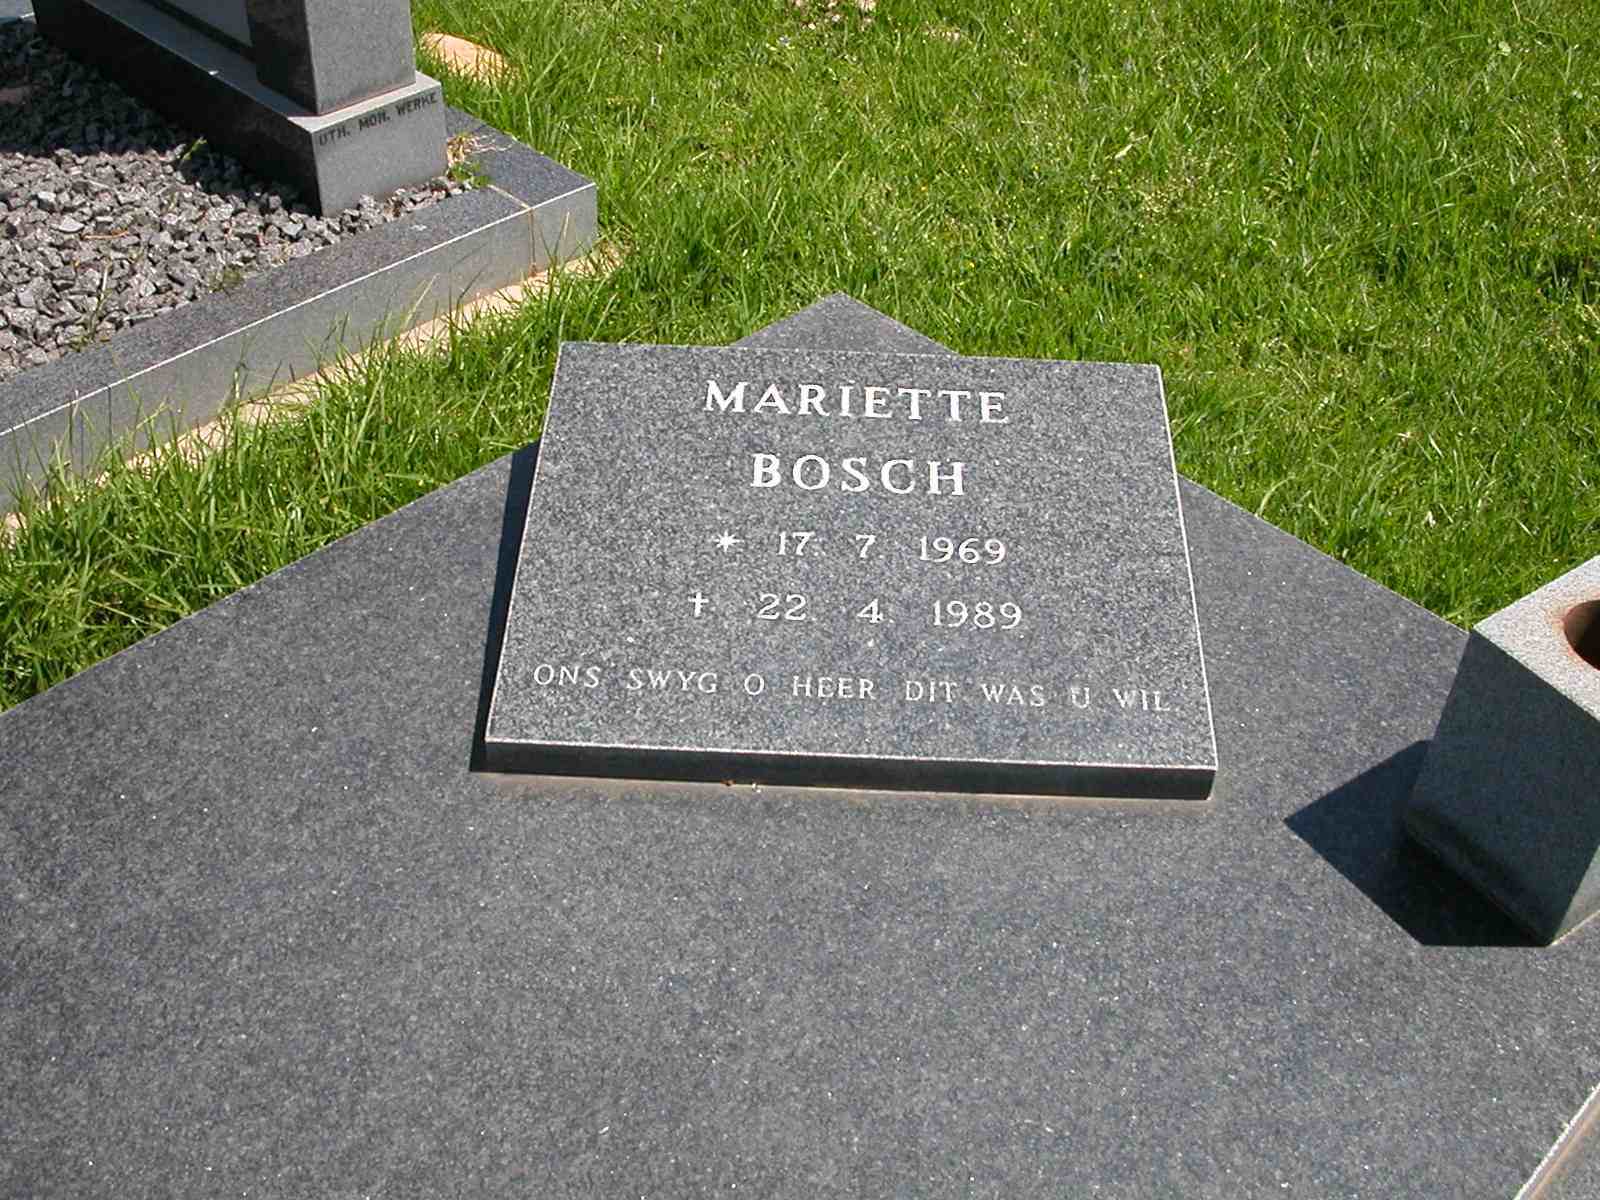 BOSCH  Mariette 1969-1989